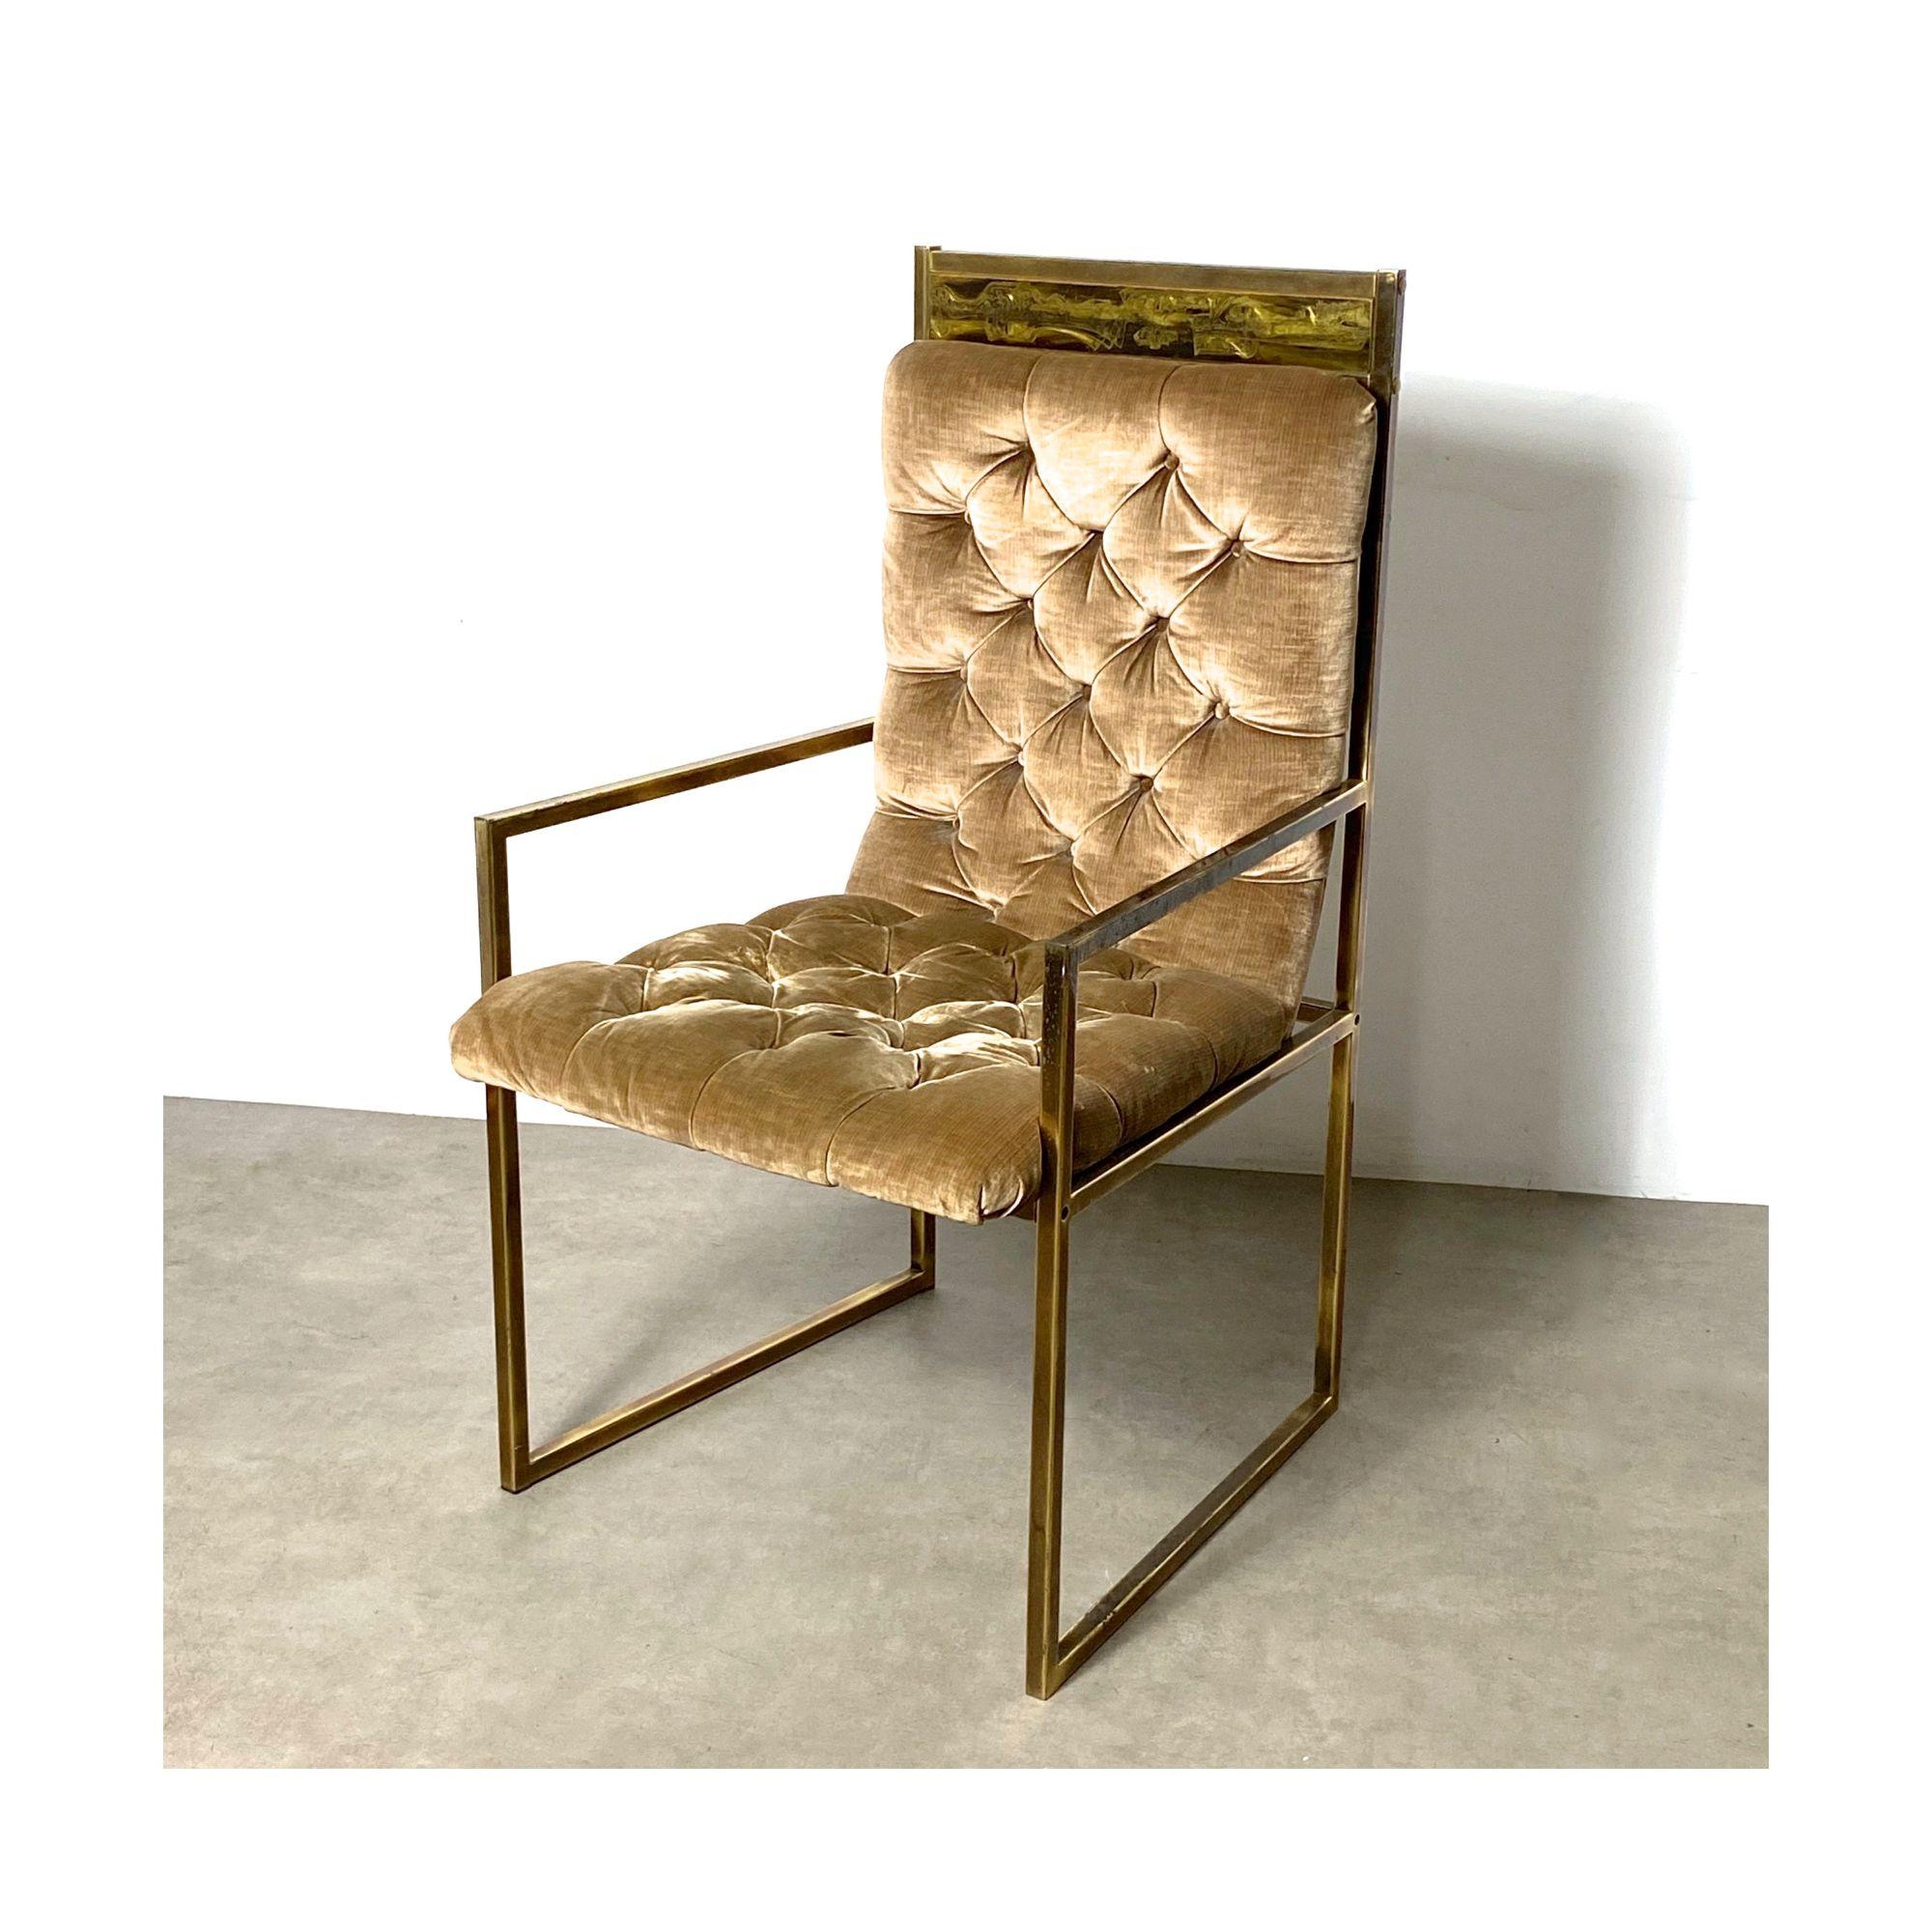 Bernhard Rohne Mastercraft Säuregeätzter Sessel

Seltener Sessel, entworfen von Bernhard Rohne für Mastercraft, um 1970
Gestell aus Messing mit schrägem, getuftetem Sitz aus champagnerfarbenem Originalsamt mit dem charakteristischen, geätzten oberen